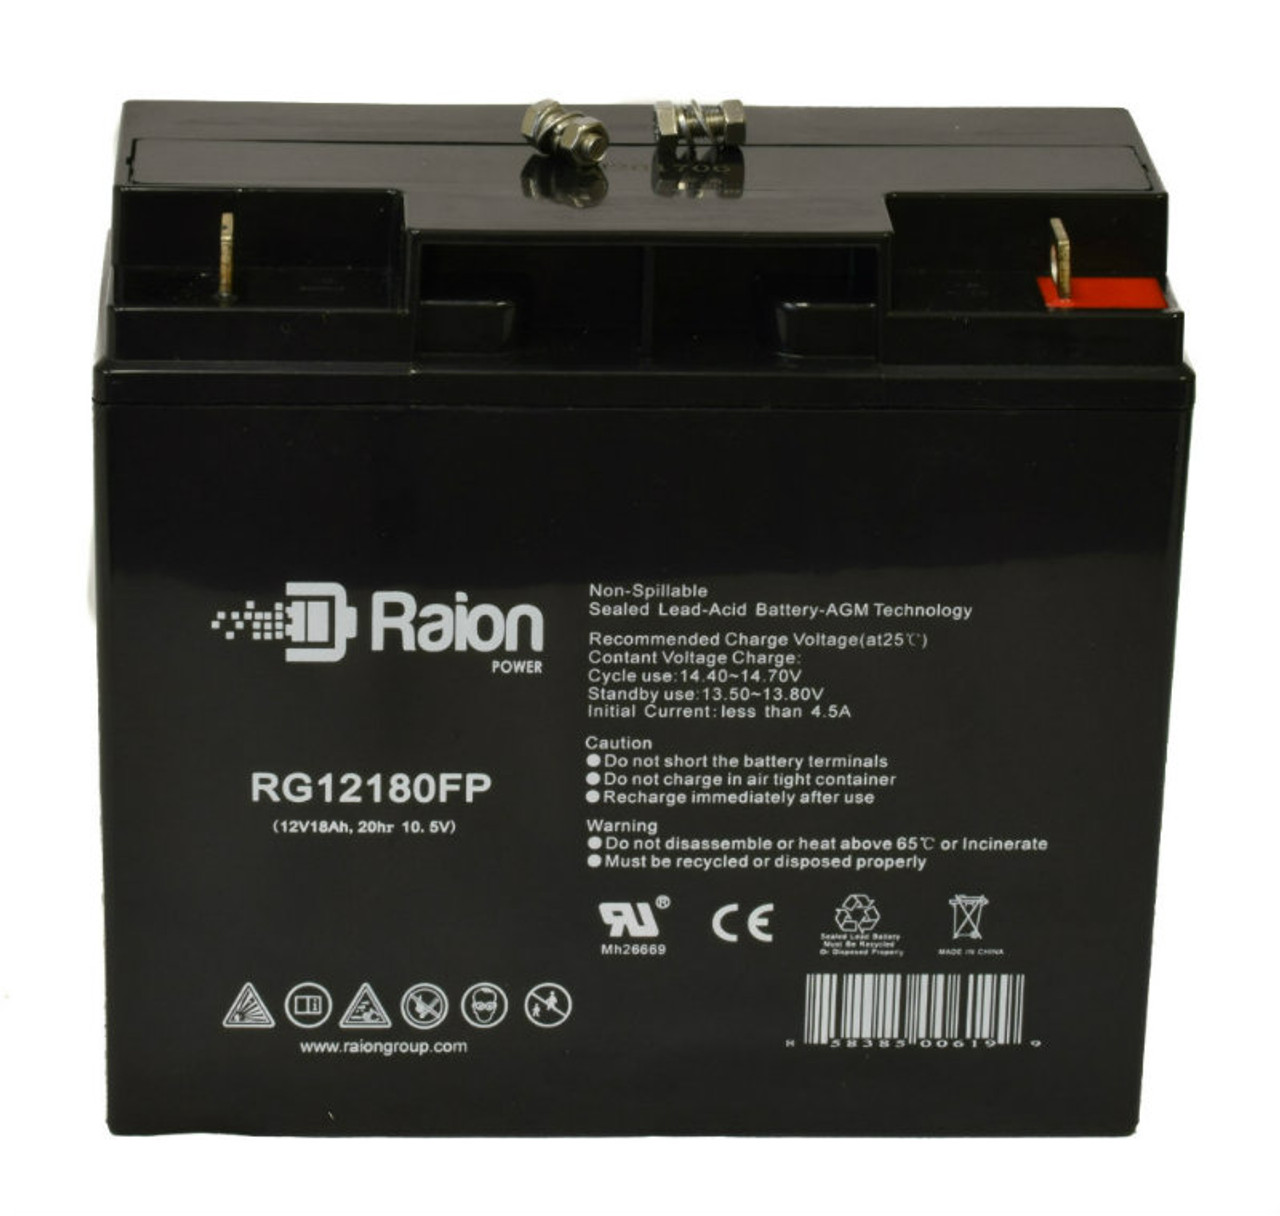 Raion Power RG12180FP 12V 18Ah Lead Acid Battery for Europower EP 17-12